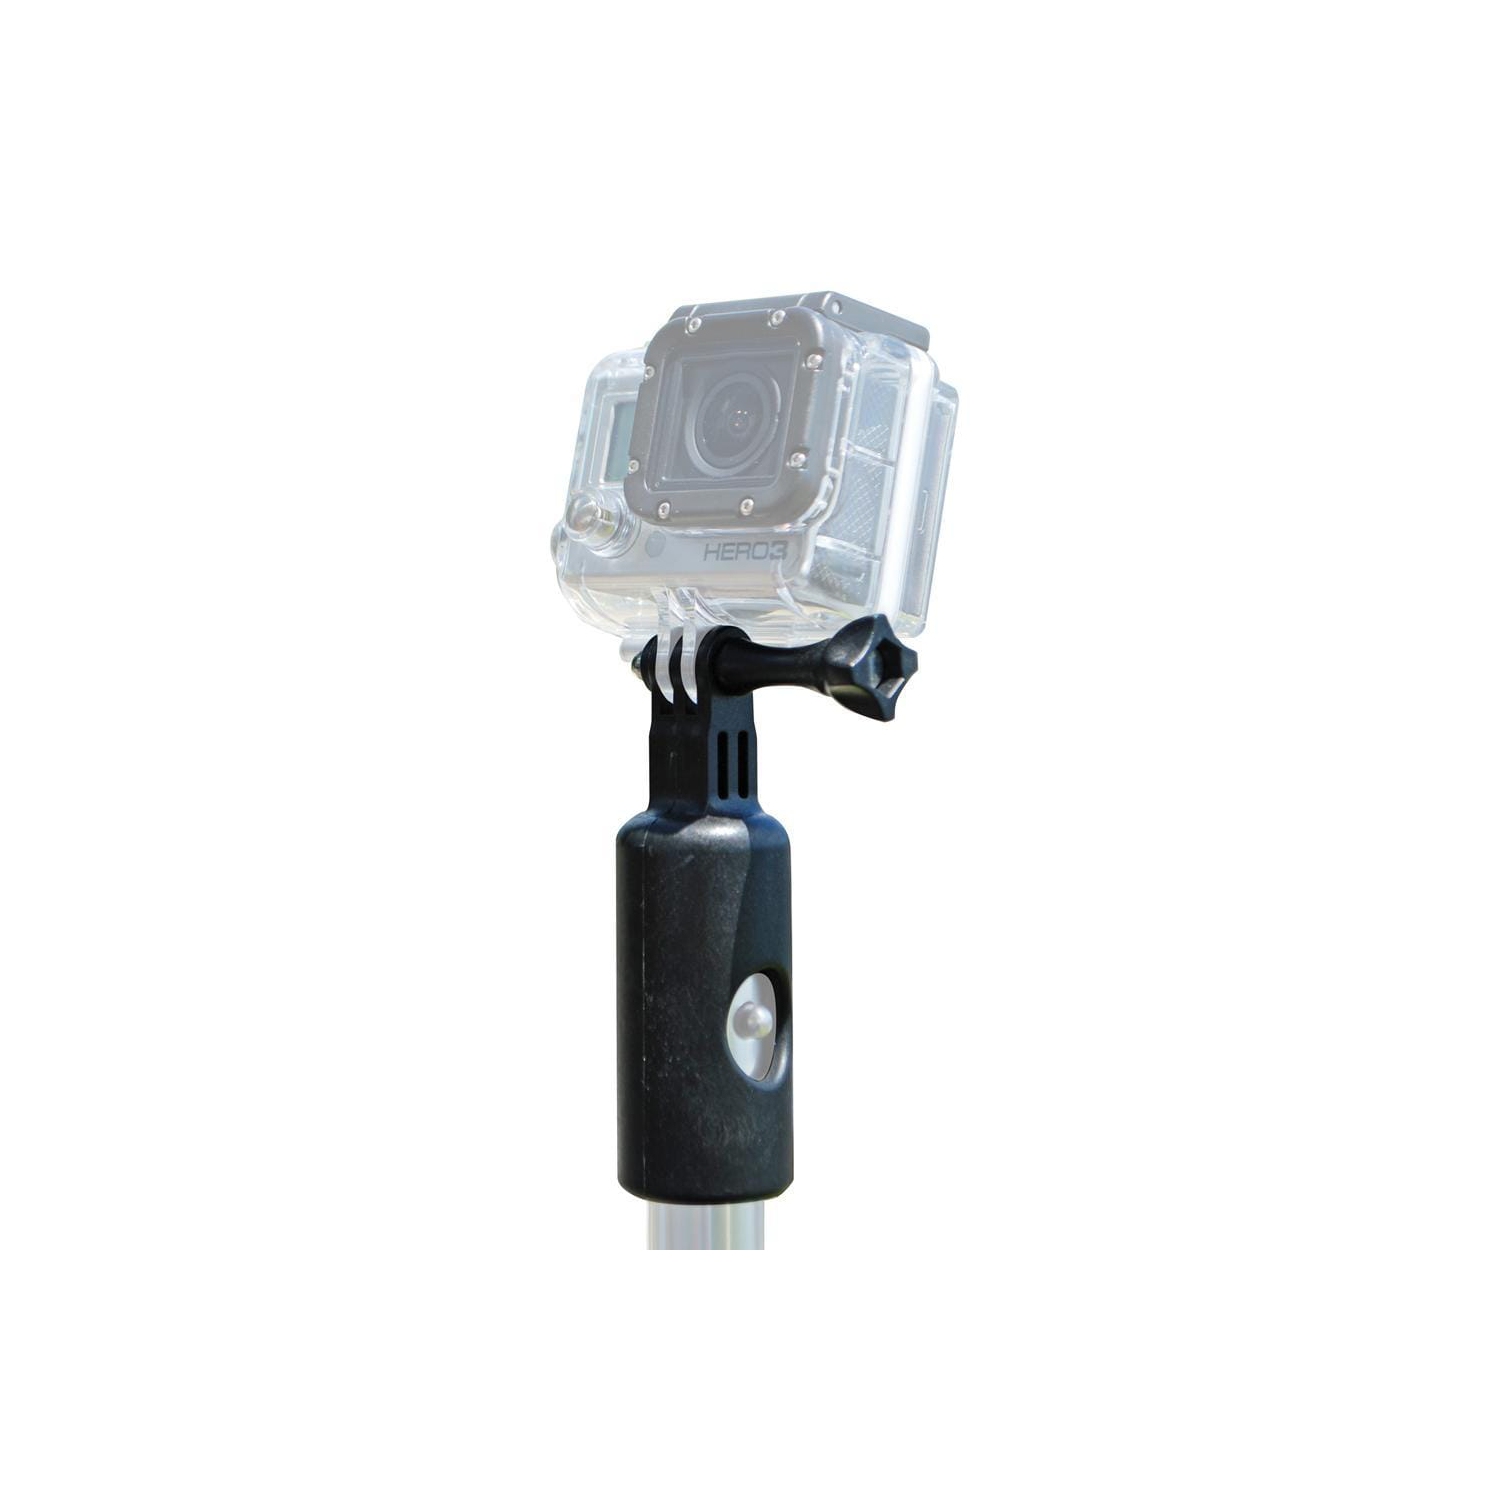 Shurhold GoPro Camera Adapter